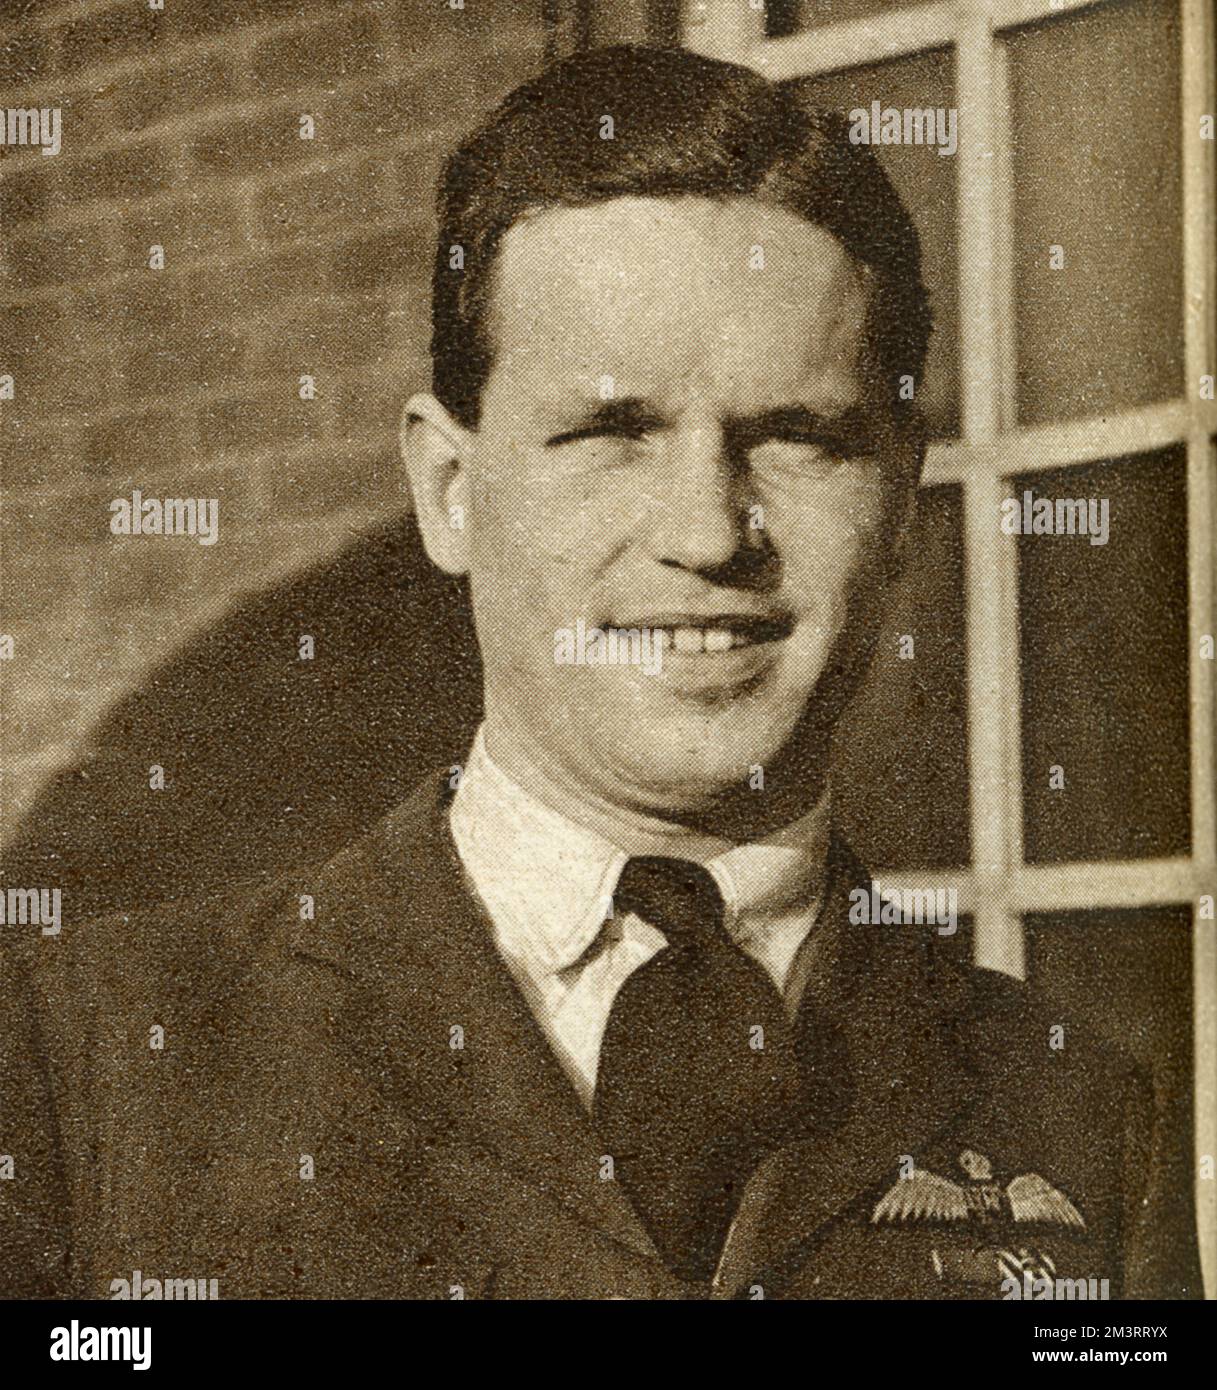 Wing Commander Guy Penrose Gibson, VC, DSO &amp; Bar, DFC &amp; Bar (12. August 1918 19. September 1944), erster Befehlshaber des 617. Geschwaders der Royal Air Force, das er 1943 bei der Razzia „Dam Busters“ (Operation Chastise) anführte, die zur Zerstörung von zwei großen Dämmen im Ruhrgebiet führte. Er wurde mit dem Victoria Cross ausgezeichnet und wurde im Juni 1943 zum hochdekoriertesten Soldaten des Landes, verlor aber später im Krieg sein Leben. Er hatte im Alter von 26 Jahren über 170 Operationen abgeschlossen. Datum: 1943 Stockfoto